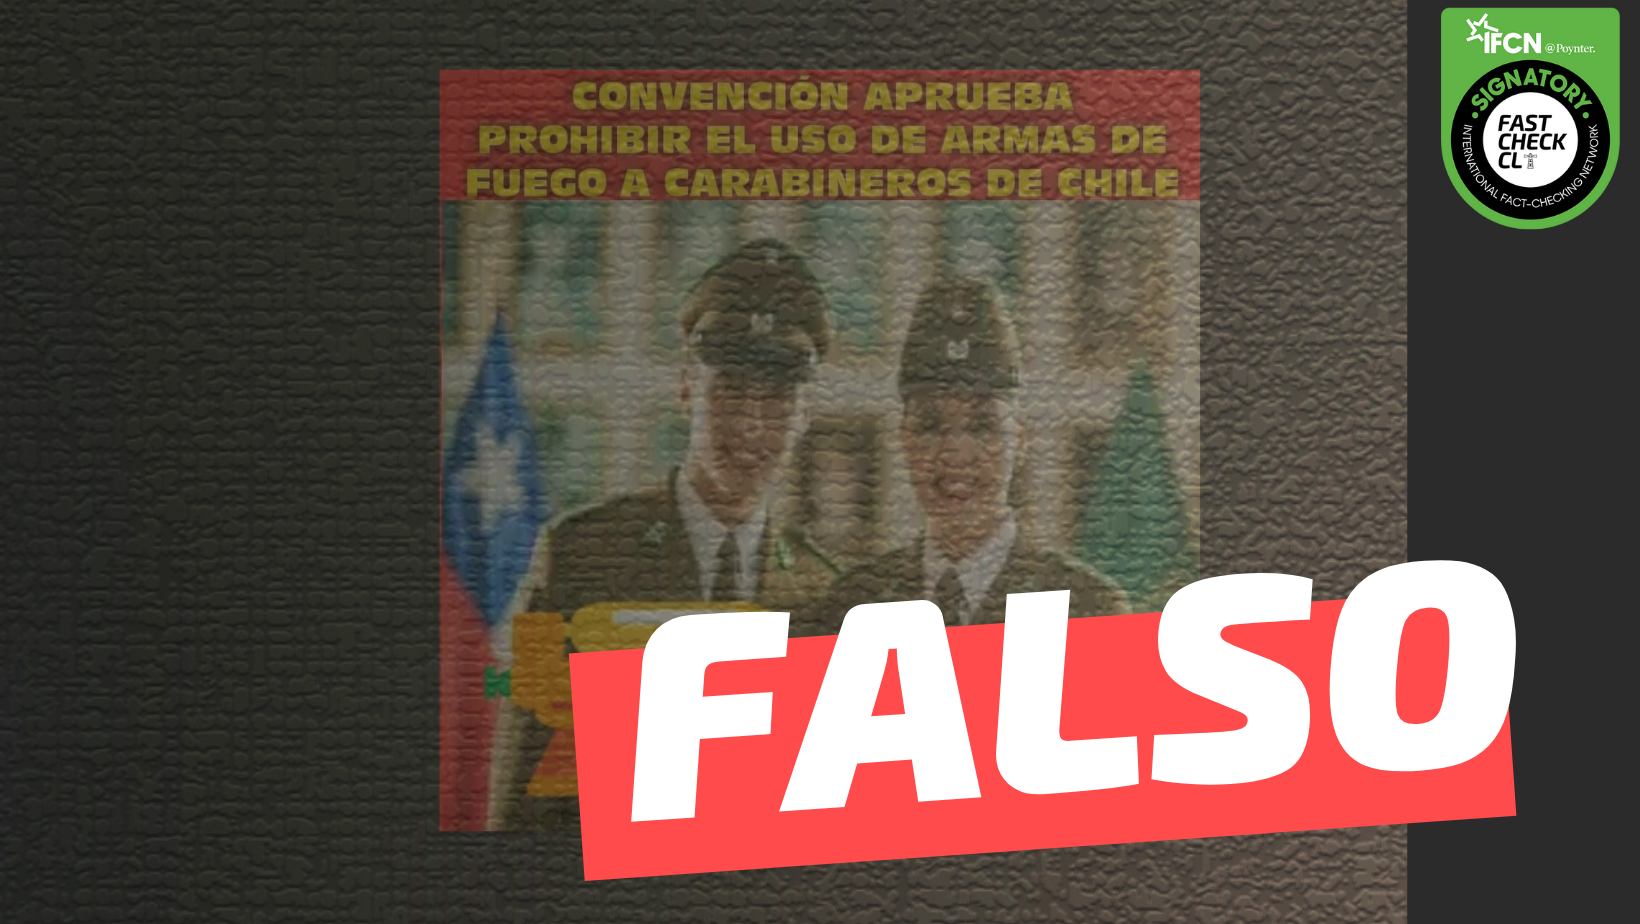 Read more about the article “Convención aprueba prohibir el uso de armas de fuego a Carabineros de Chile”: #Falso